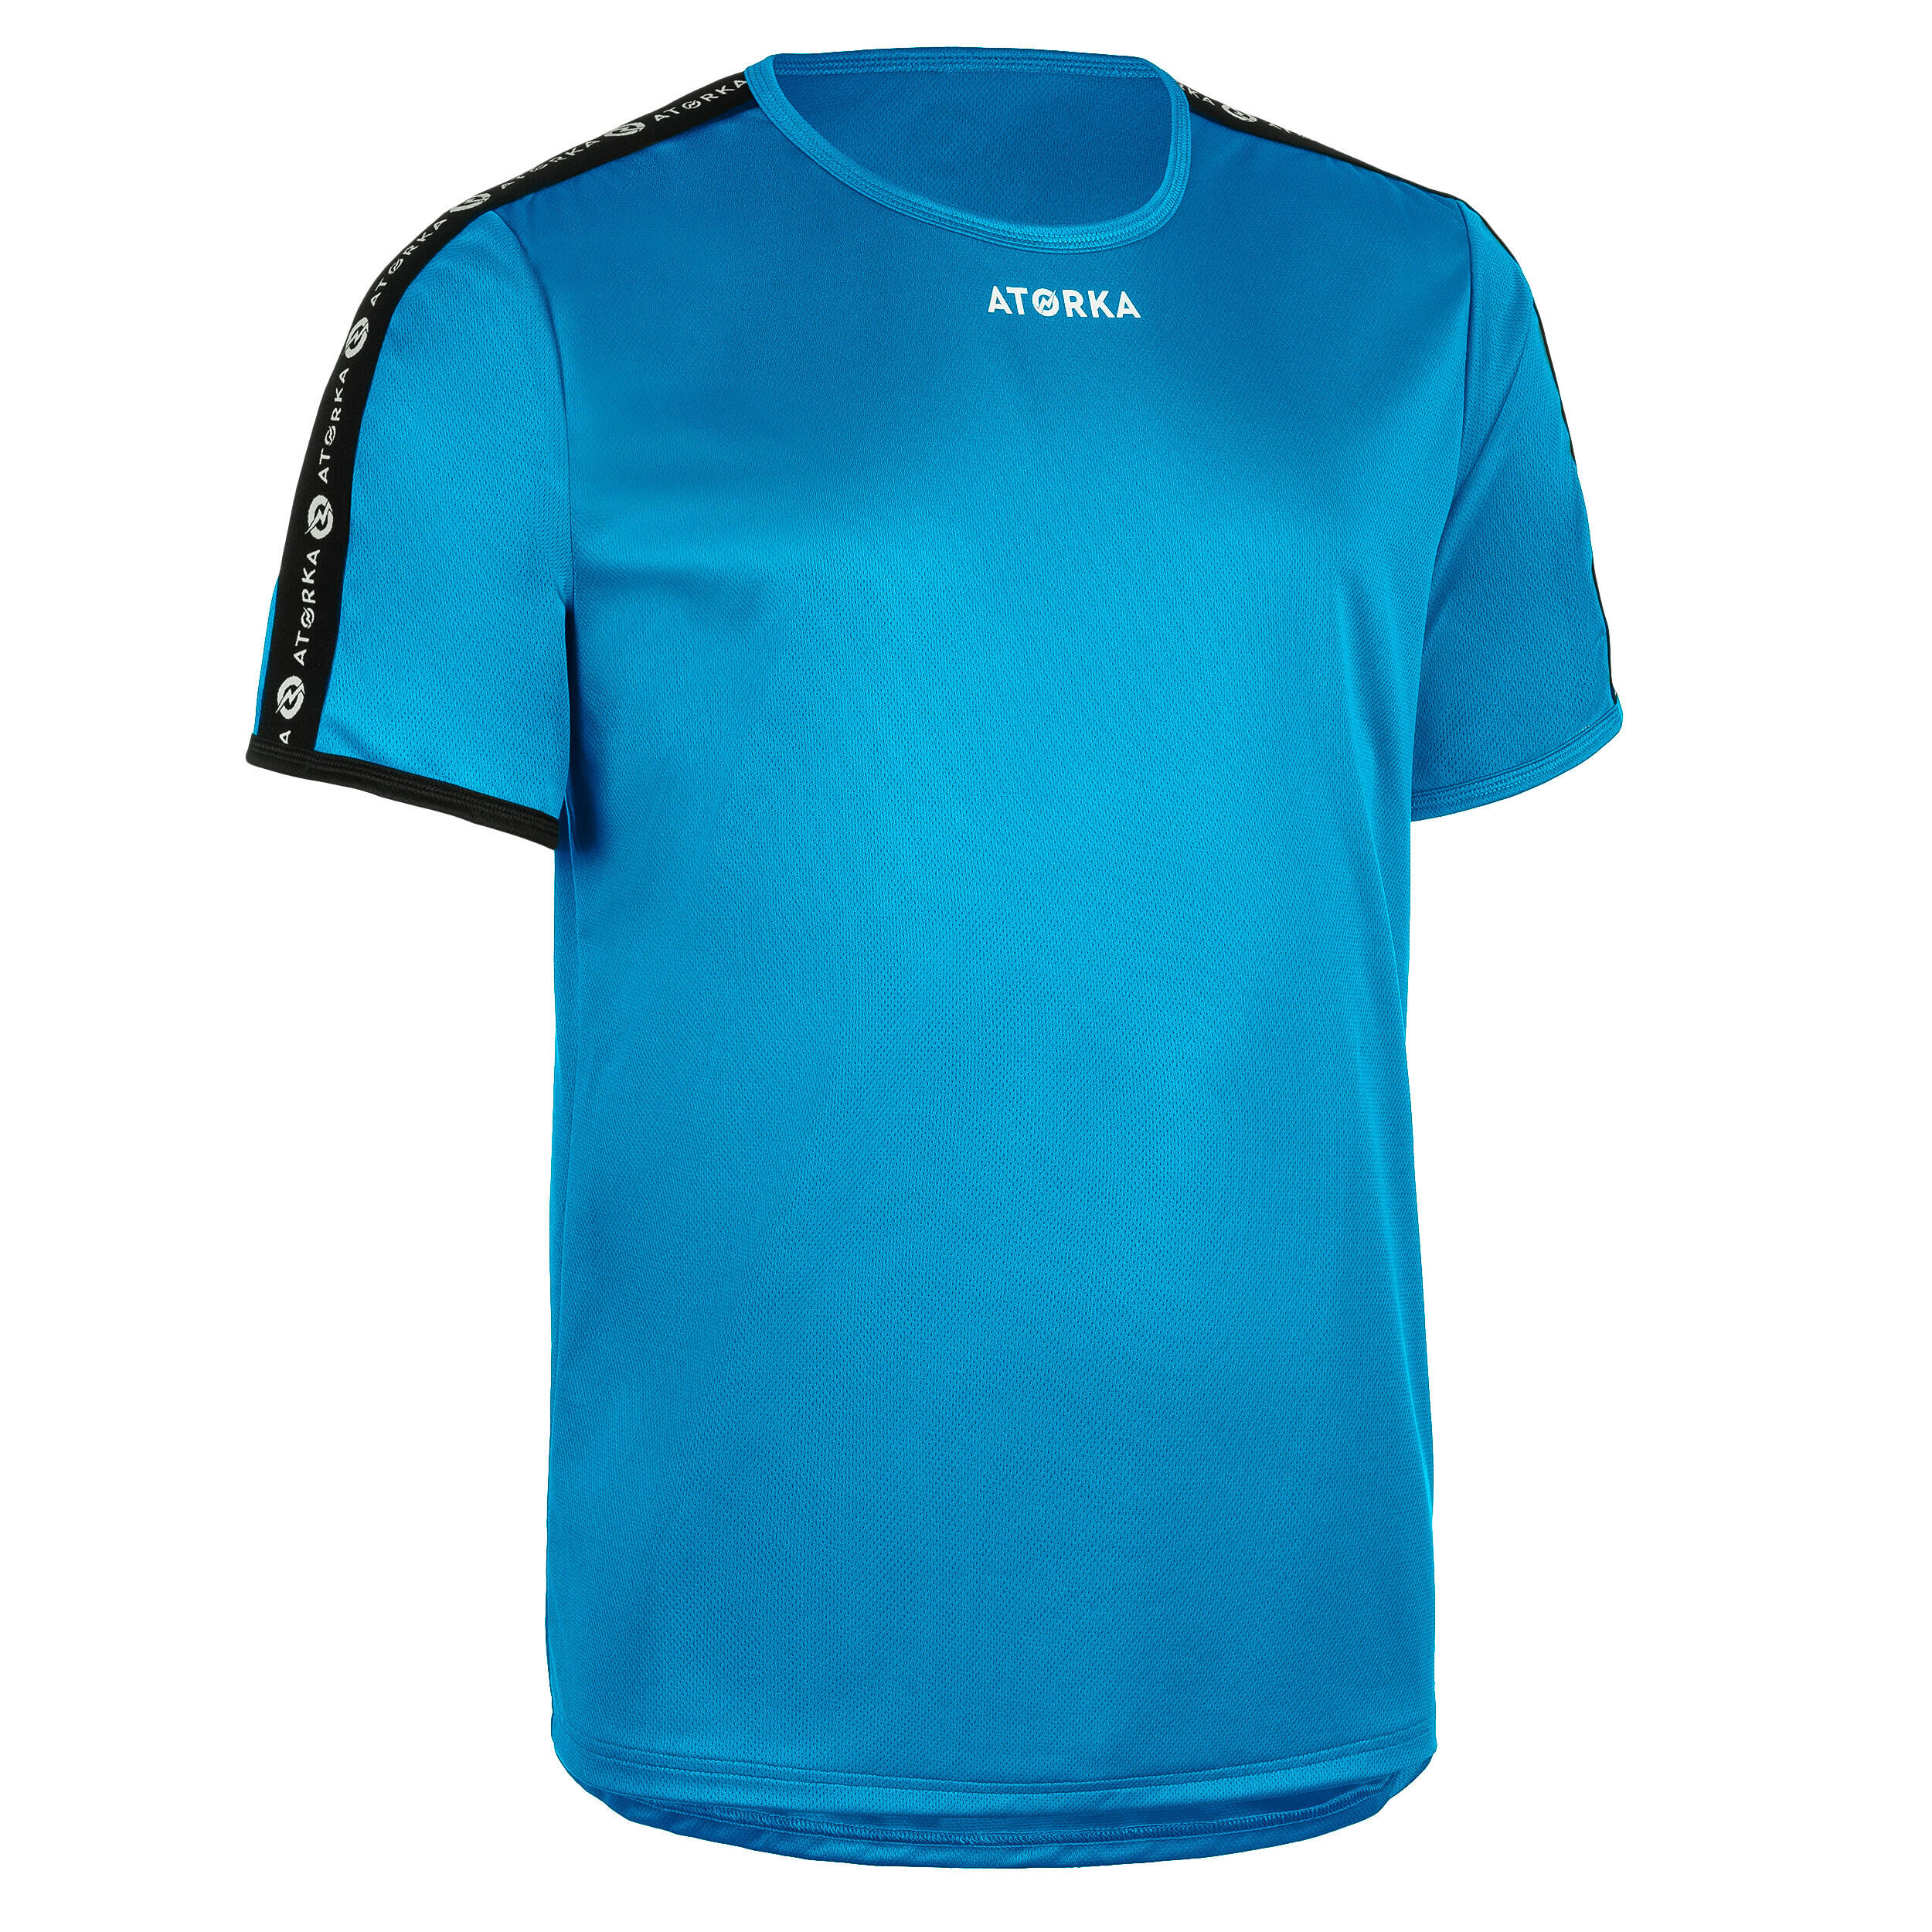 ATORKA H100C Short-Sleeved Handball Top - Light Blue